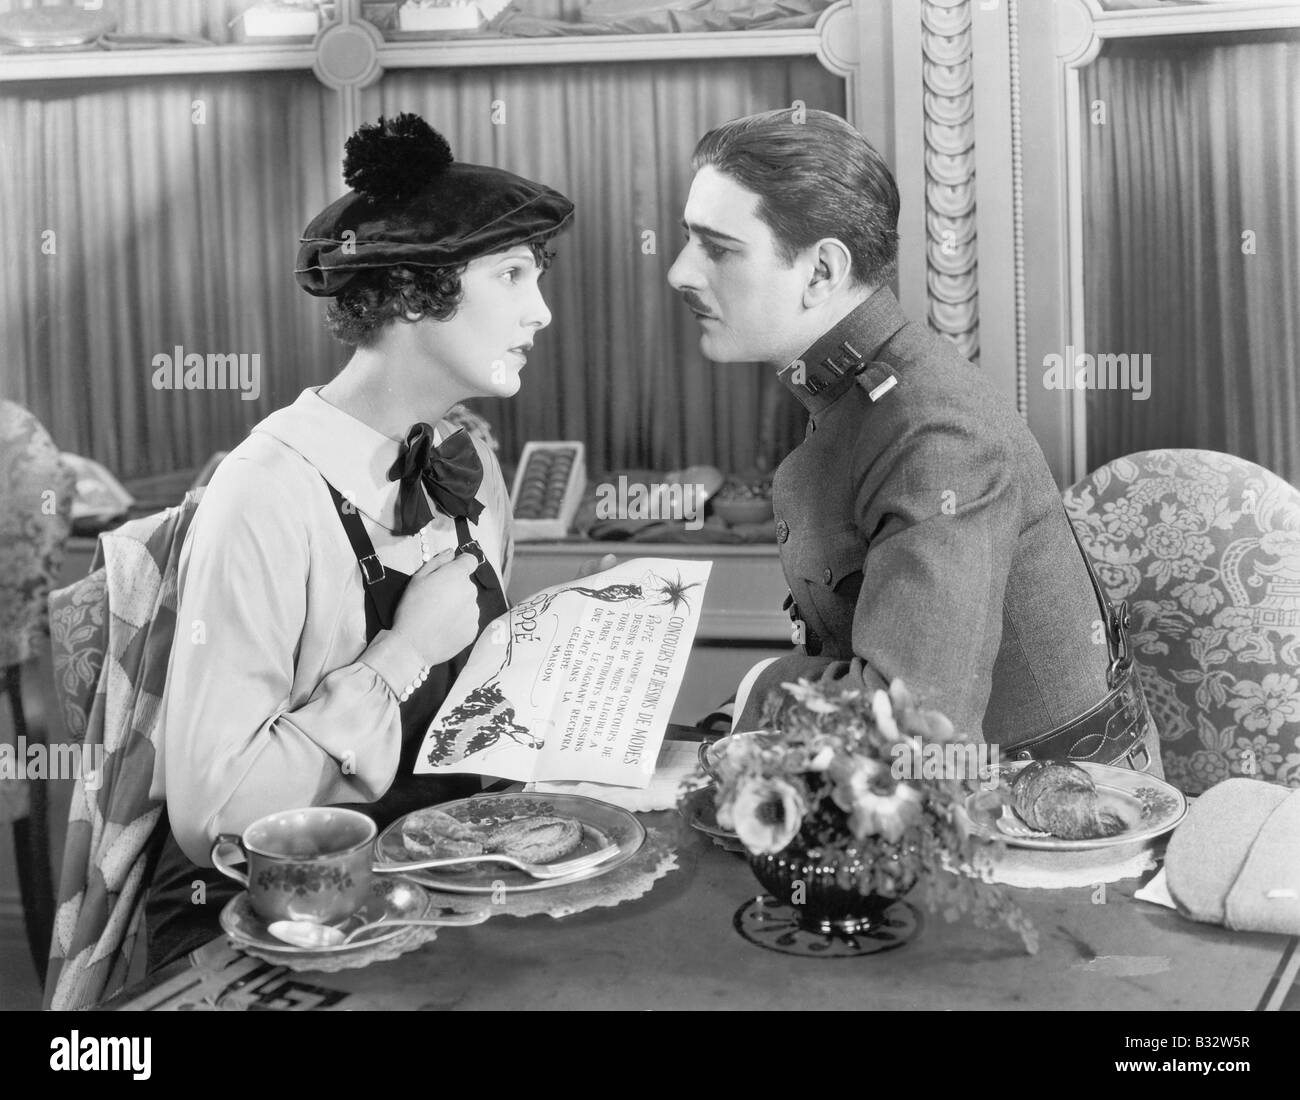 Homme en uniforme et d'une femme assis ensemble à une table et regarder Banque D'Images